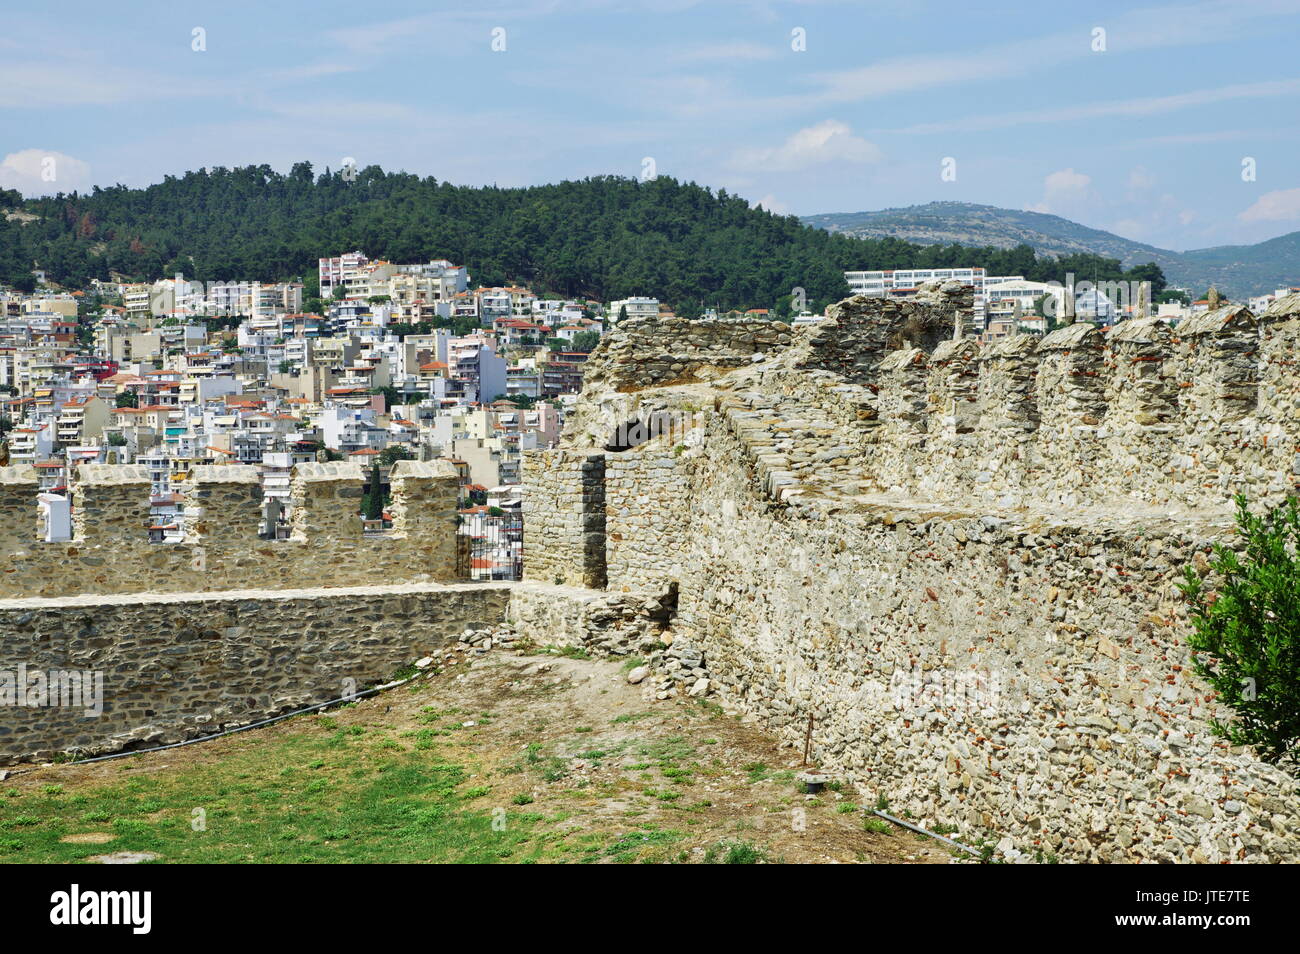 La ville de Kavala, dans le nord de la Grèce, dans la région de l'Macedonia-Thrace, situé sur la mer Egée. Murs de la citadelle byzantine et la partie de la ville. Banque D'Images